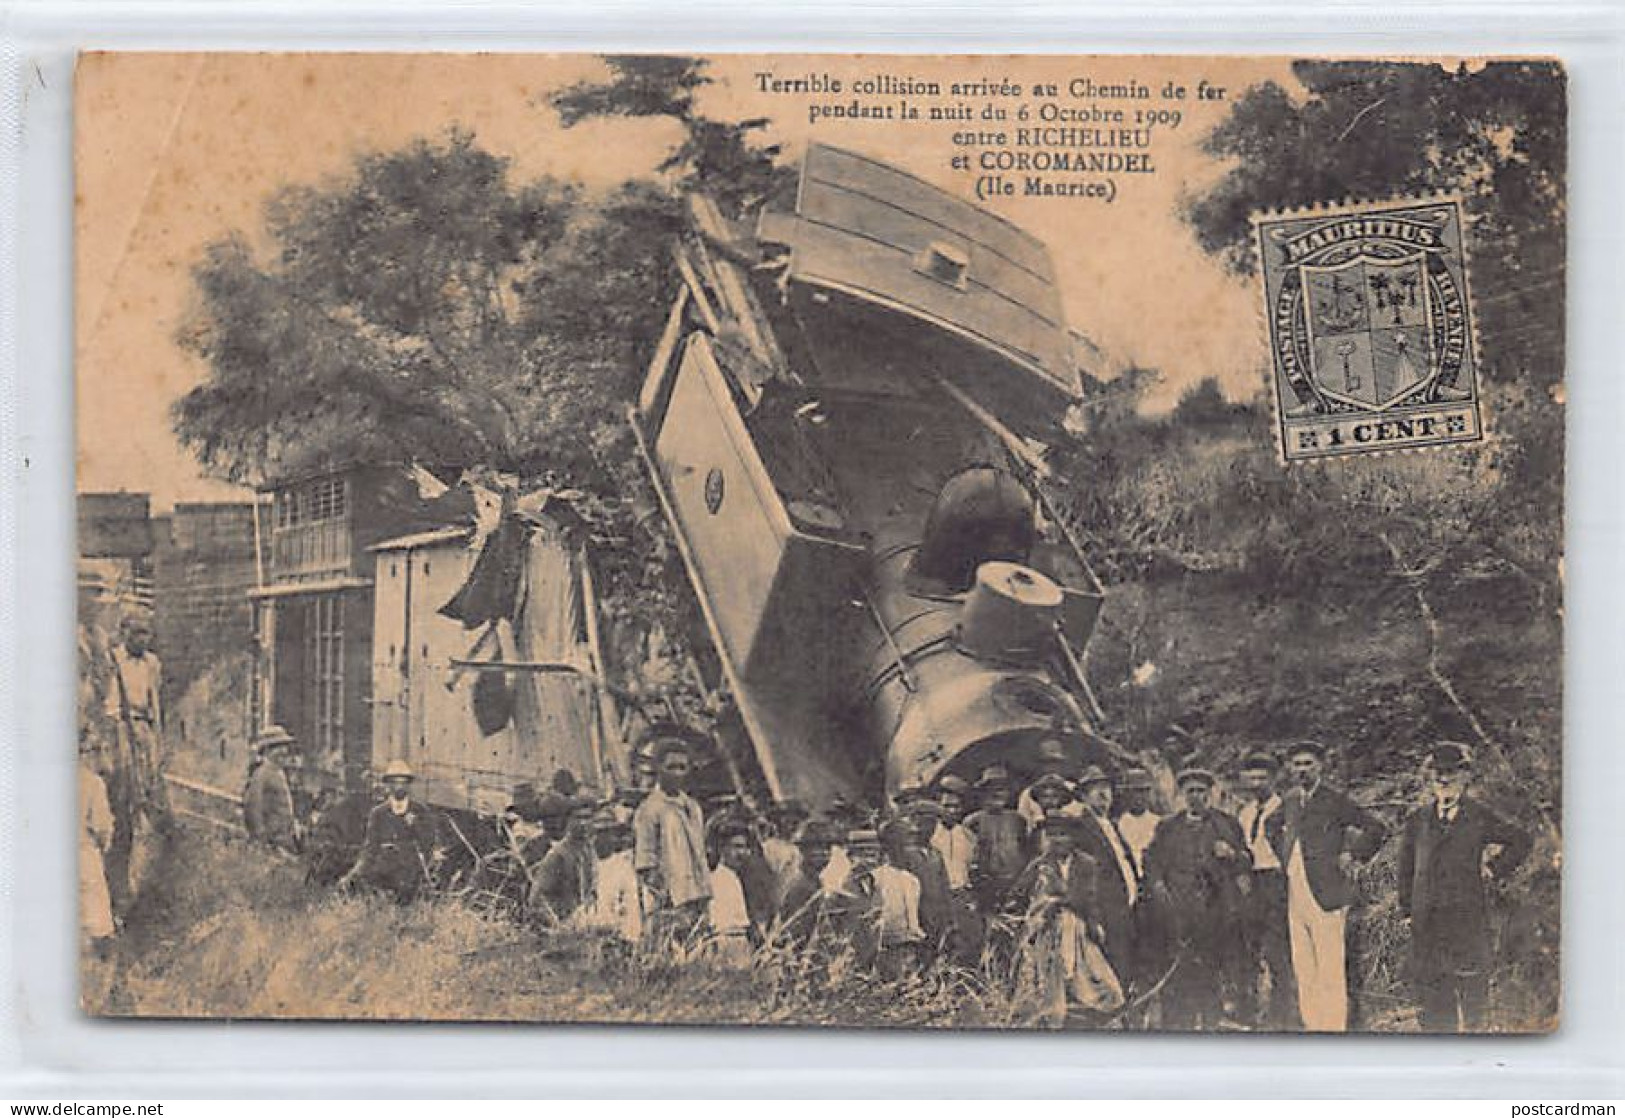 Mauritius - Terrible Collision Arrivée Au Chemin De Fer Pendant La Nuit Du 6 Octobre 1909 Entre Richelieu Et Coromandel  - Maurice